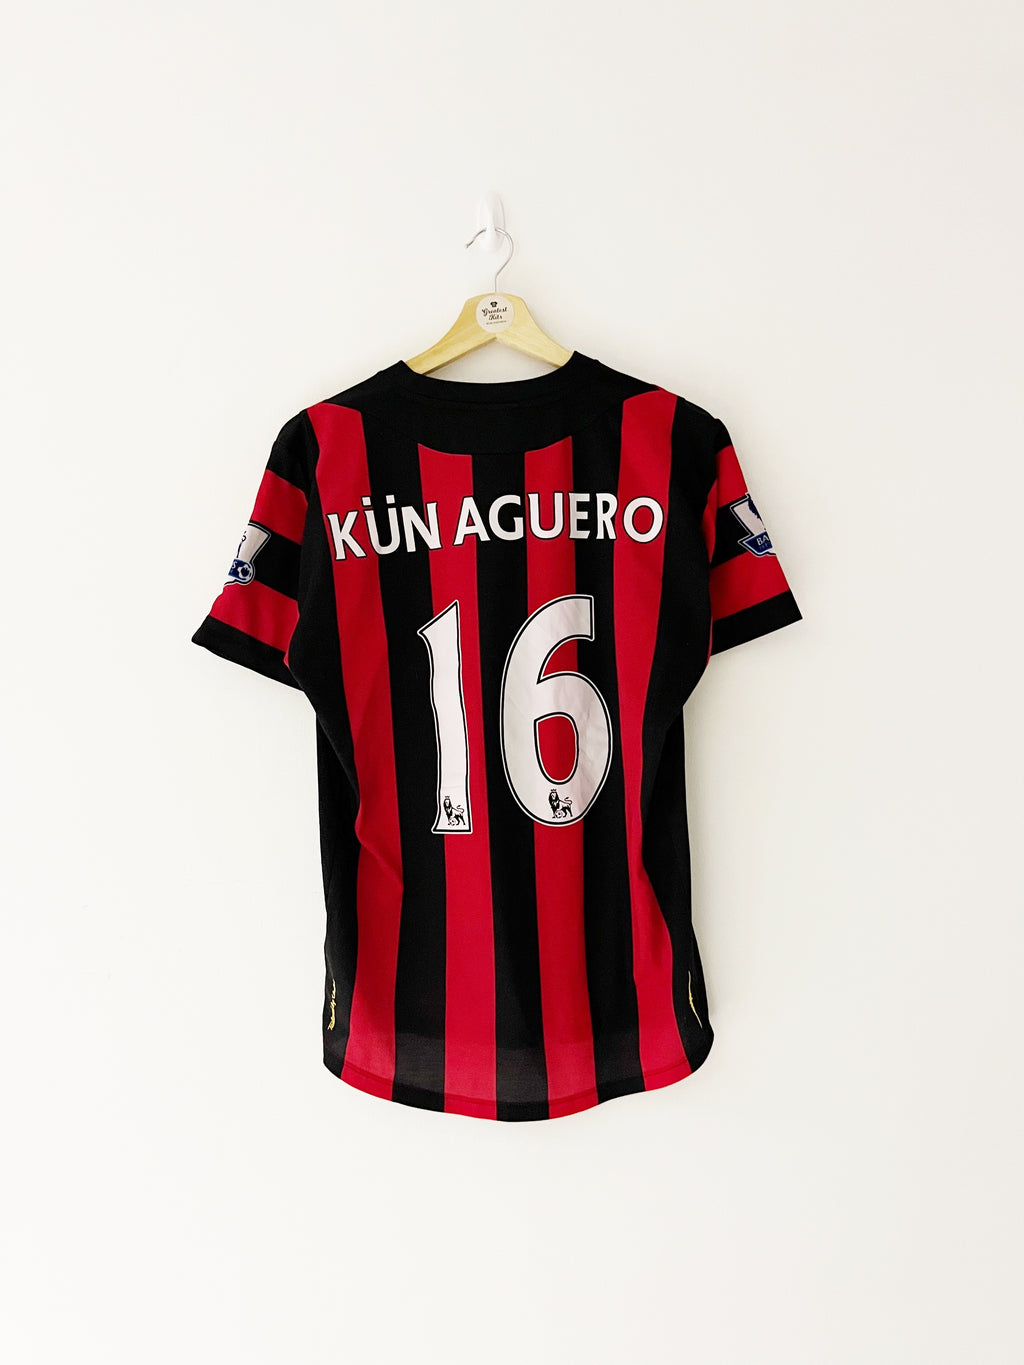 2011/12 Manchester City Away Shirt Kün Aguero #16 (M) 9/10